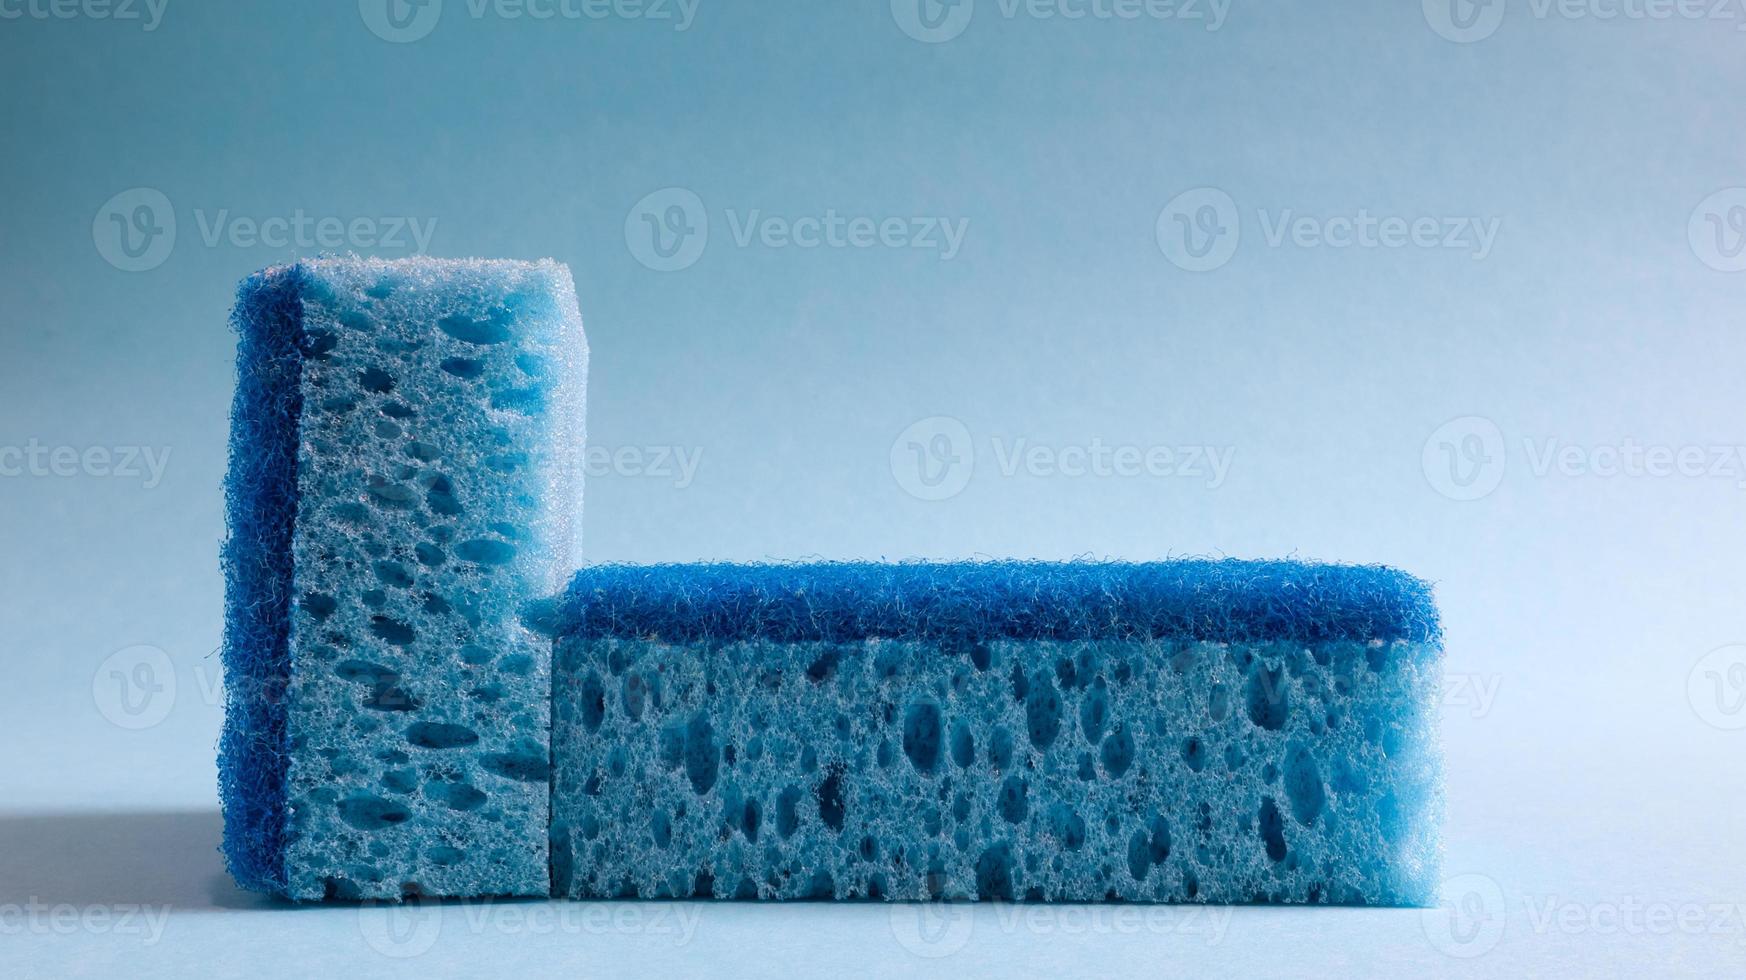 två blå svampar som används för att tvätta och radera smuts som används av hemmafruar i vardagen. de är gjorda av poröst material som skum. rengöringsmedelsretention, vilket gör att du kan spendera det ekonomiskt foto